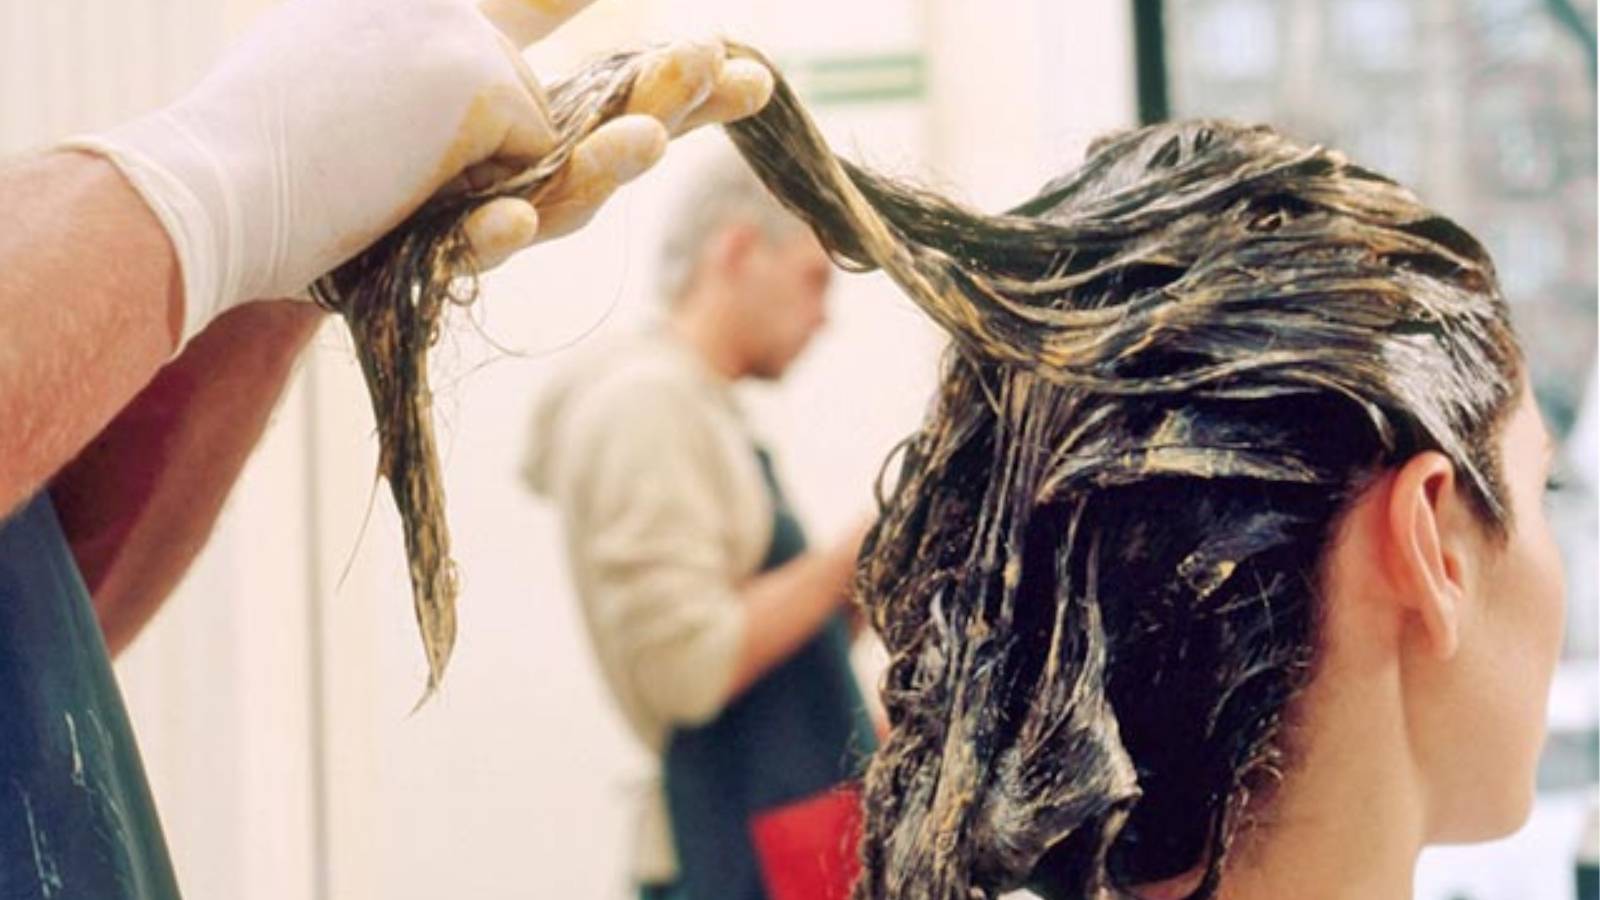 Tháng nào cũng đi nhuộm tóc, người phụ nữ bị xơ gan sau 10 năm - 2